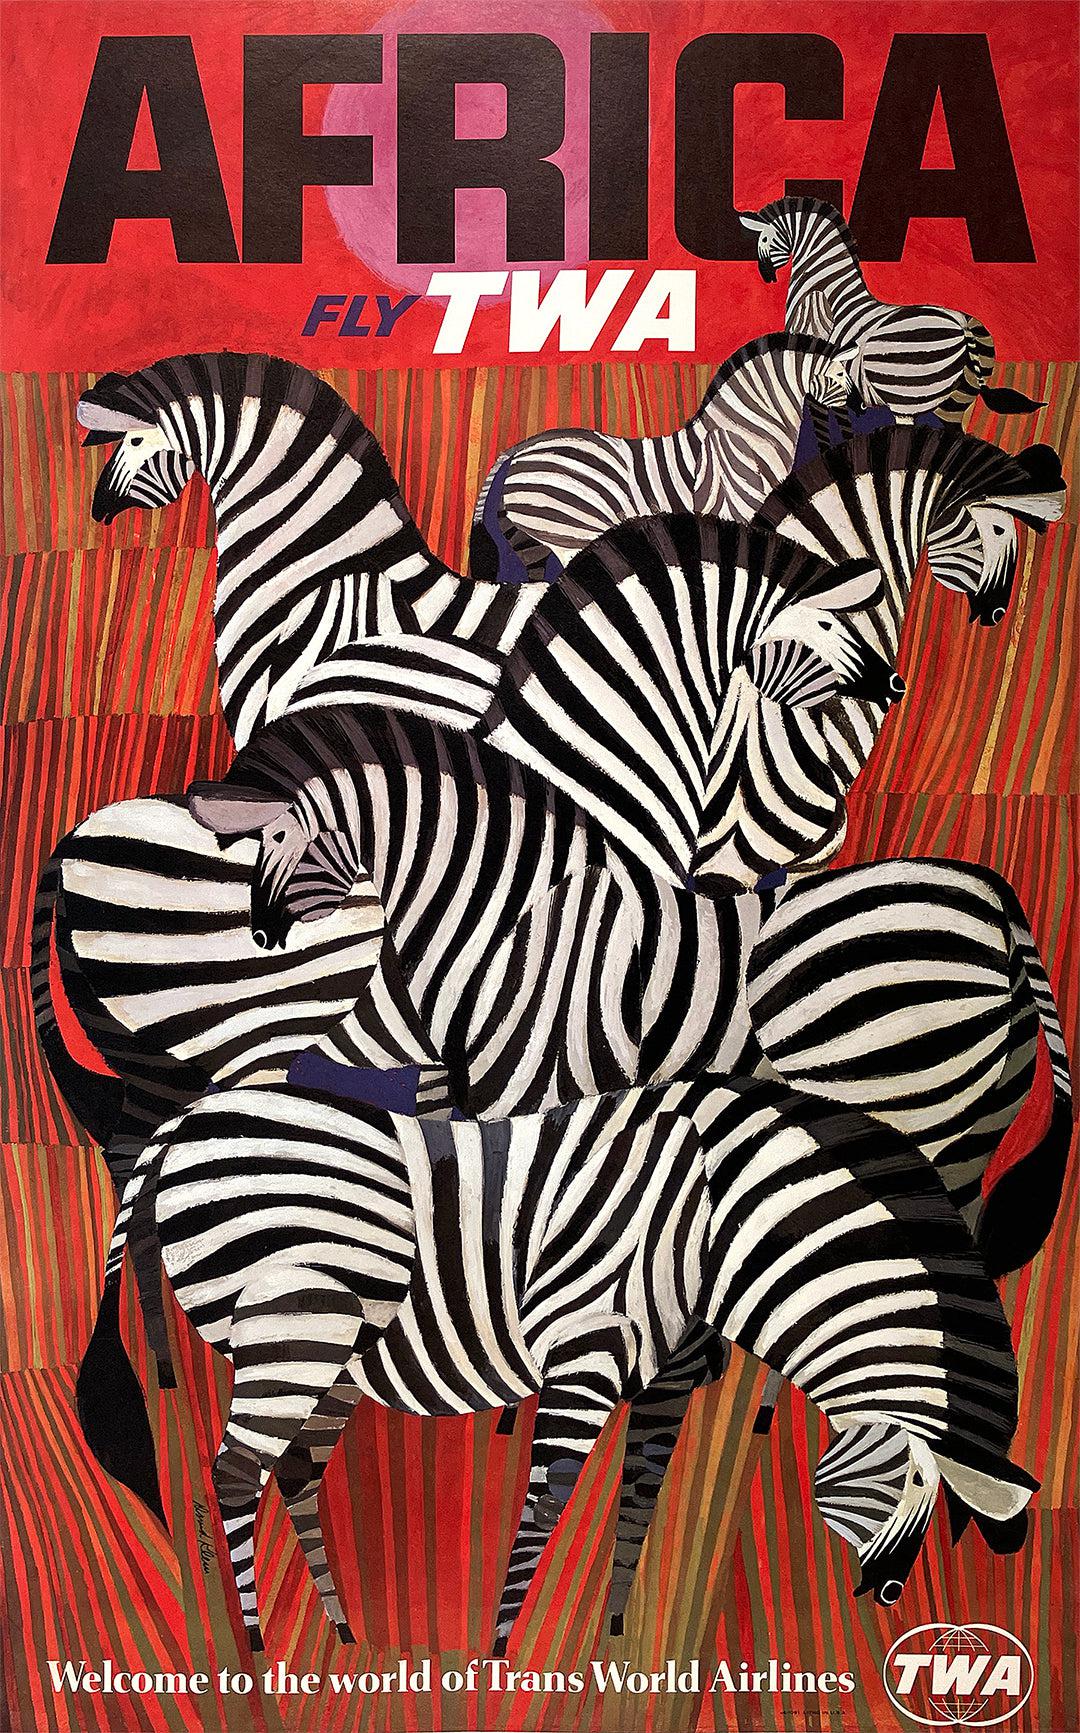 Origiinal David Klein Fly TWA Africa Zebras Poster - Welcome c1960